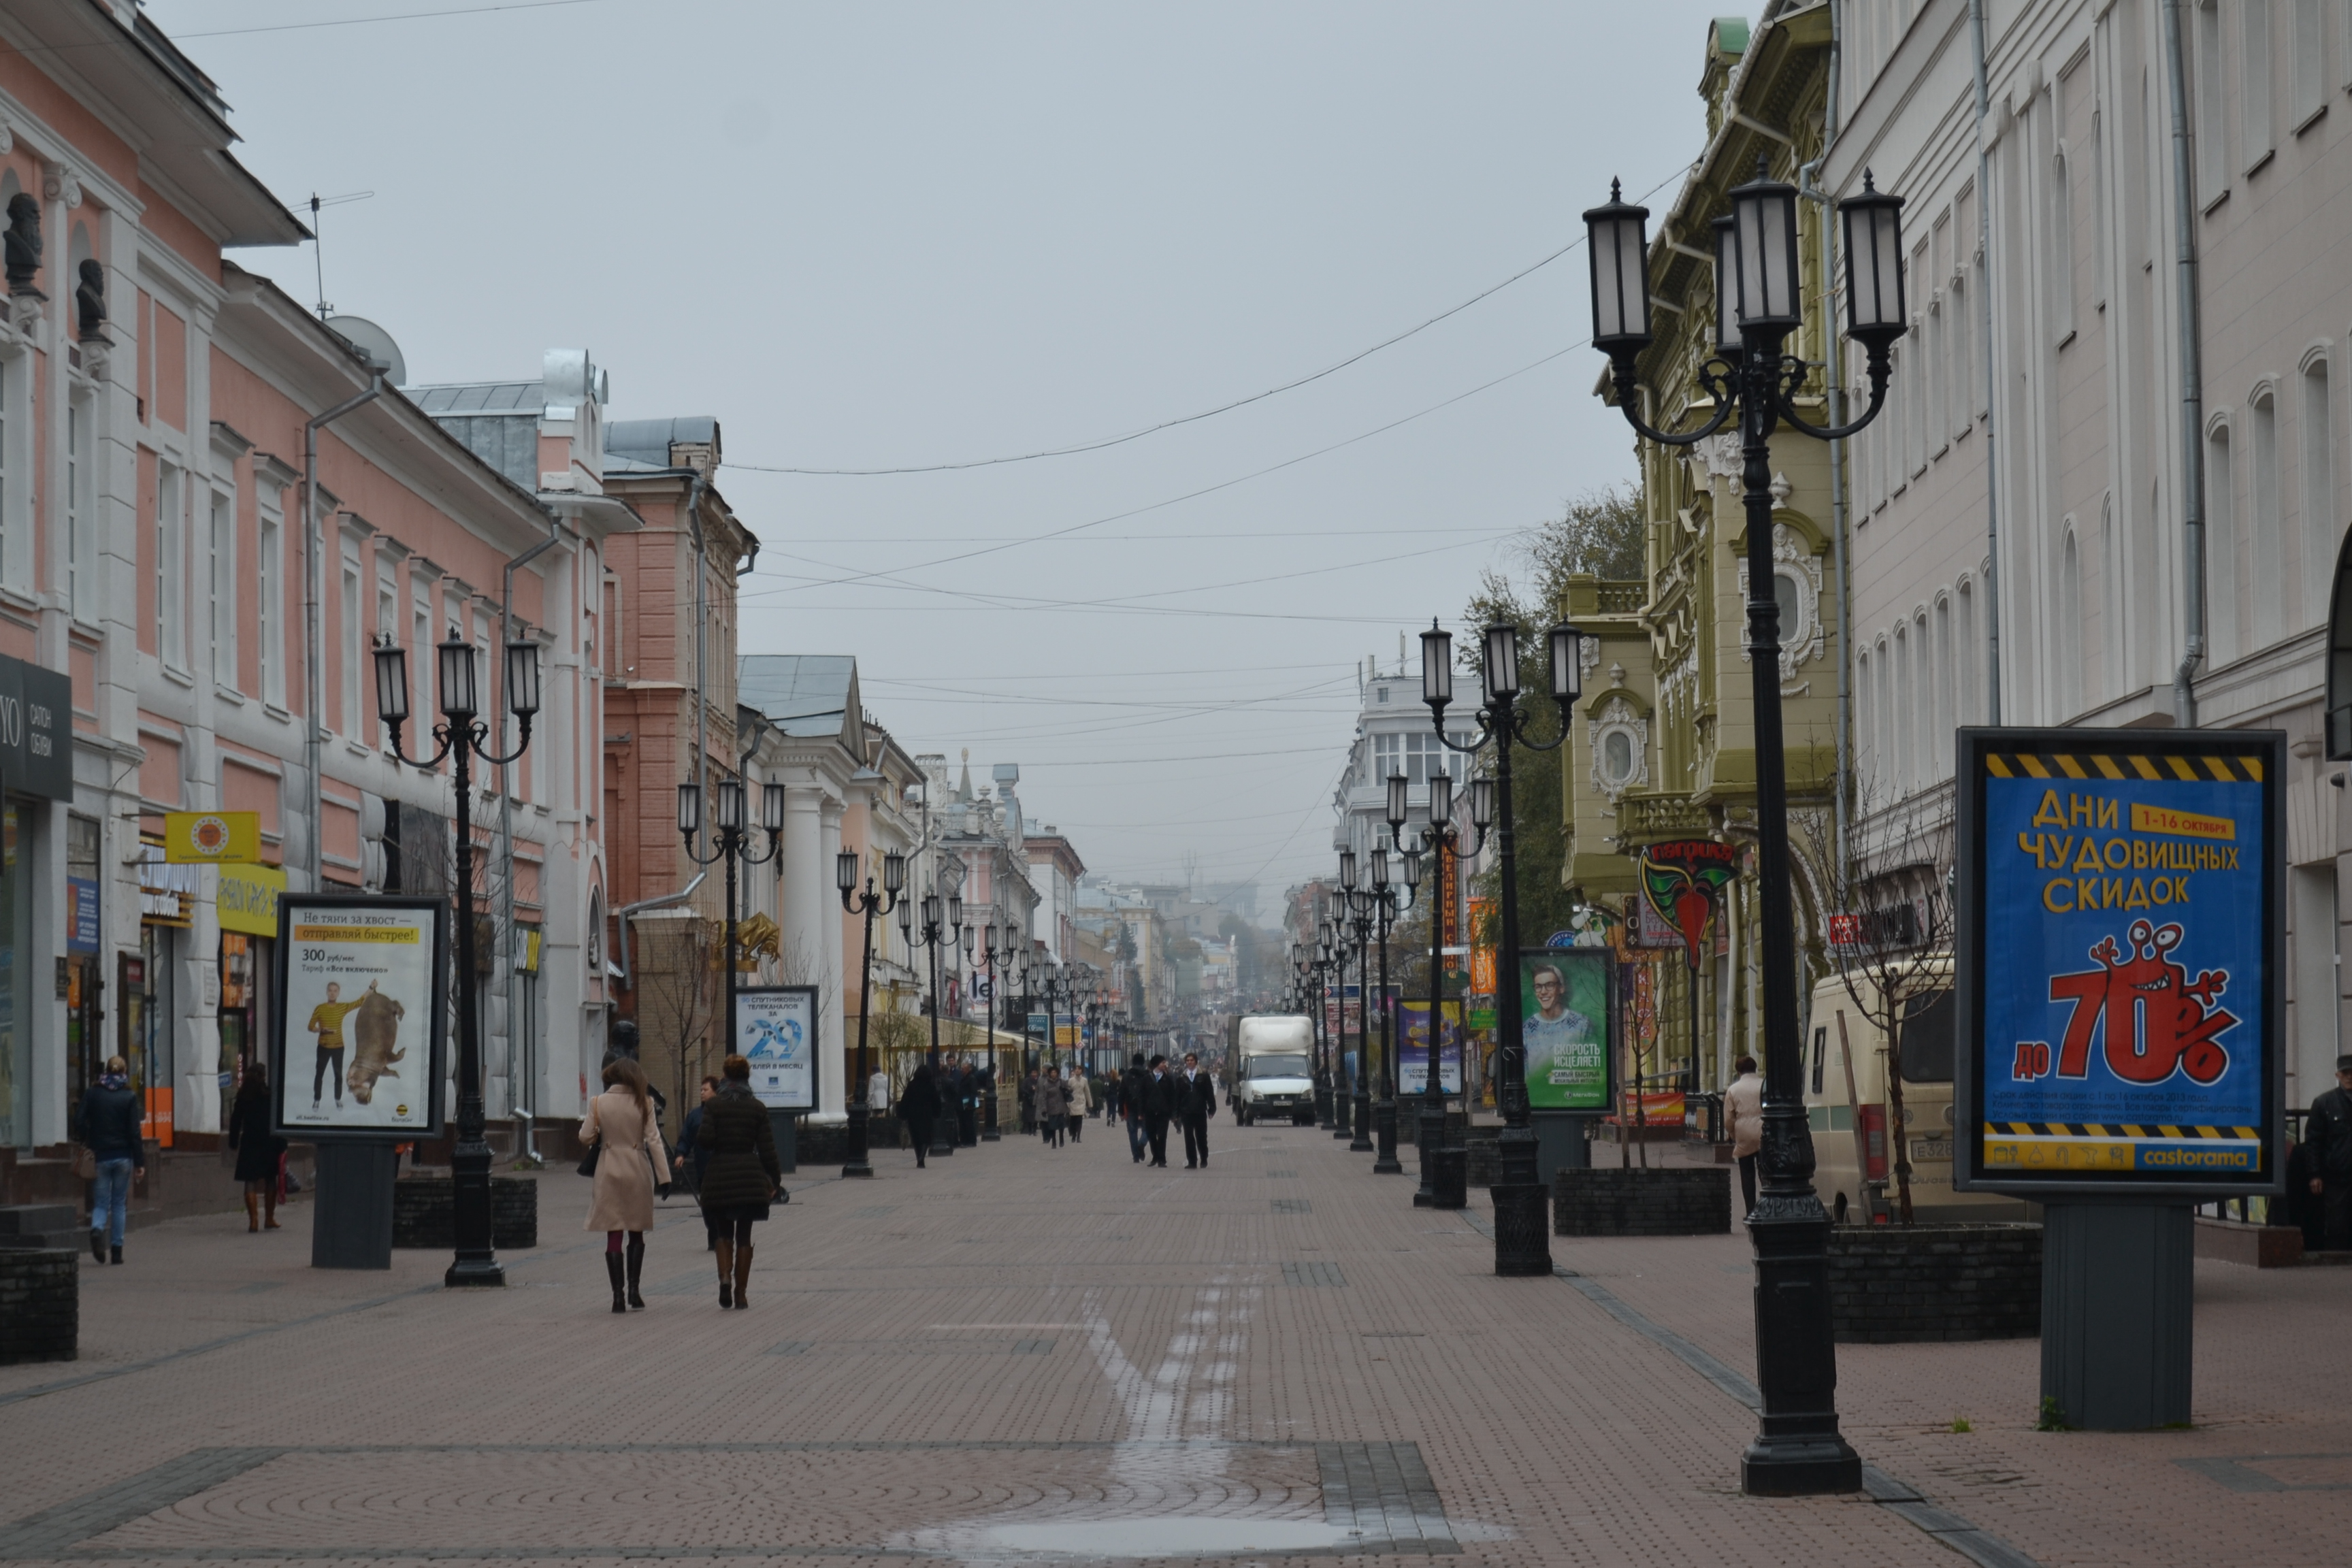 Нижний Новгород  возглавил  тройку лидеров по затратам на благоустройство общественных пространств - фото 1